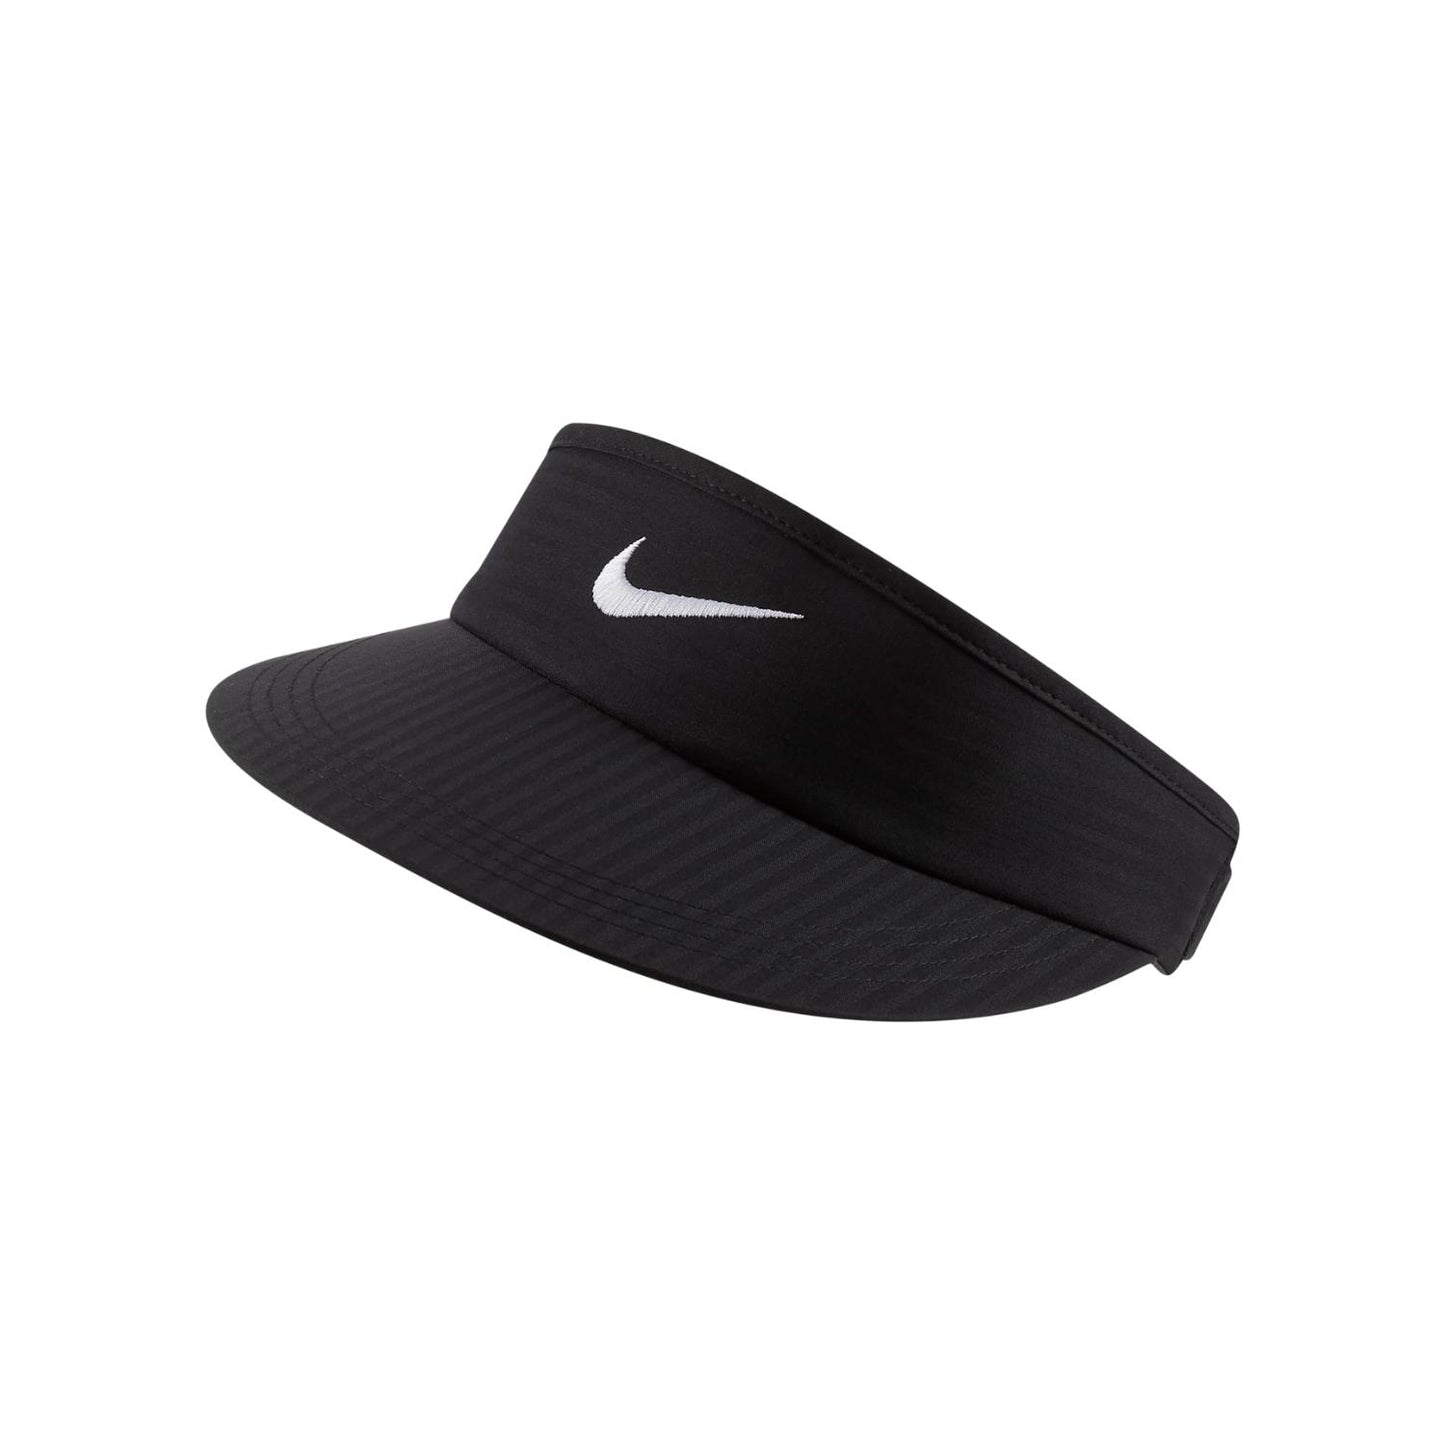 Nike visor